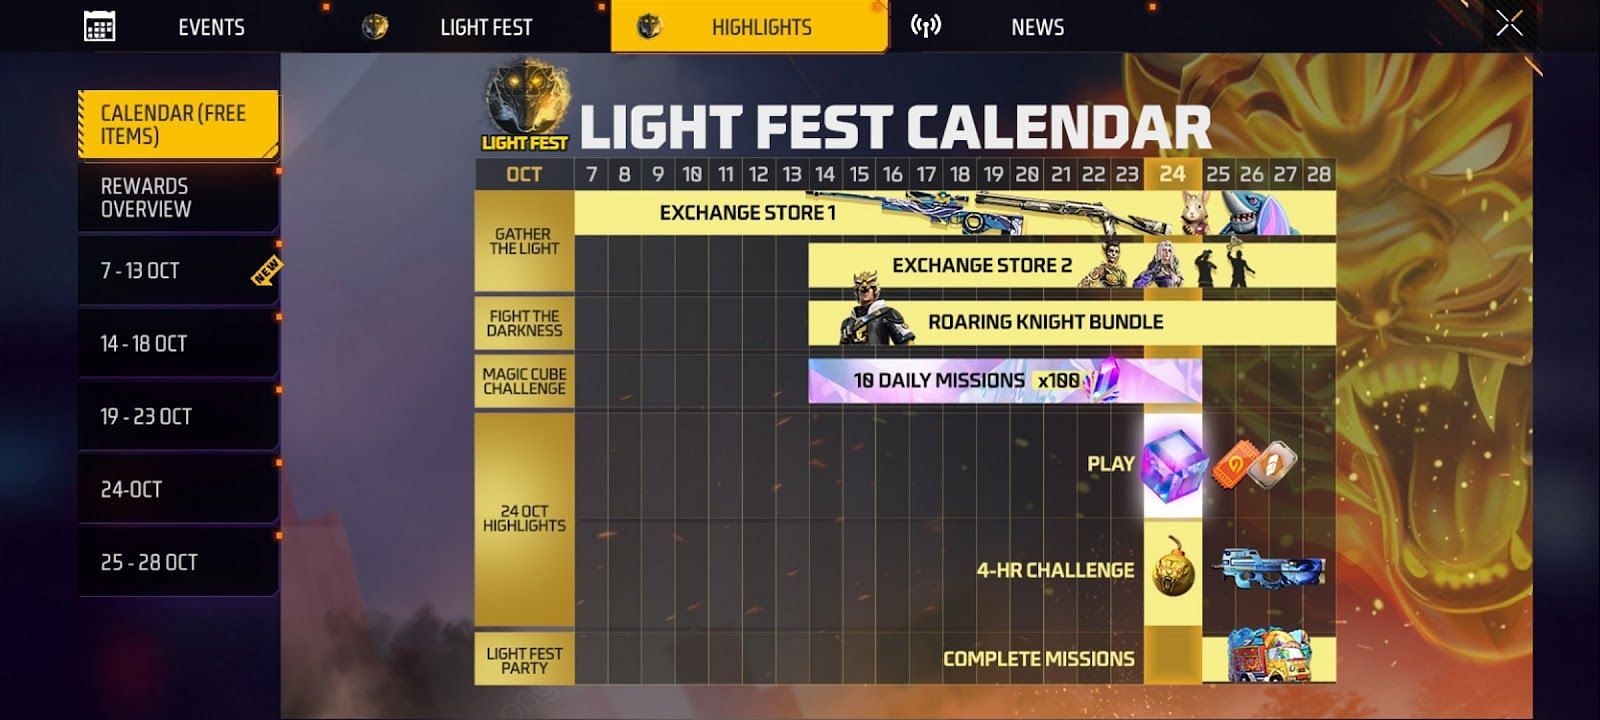 Light Fest calendar (Image via Garena)